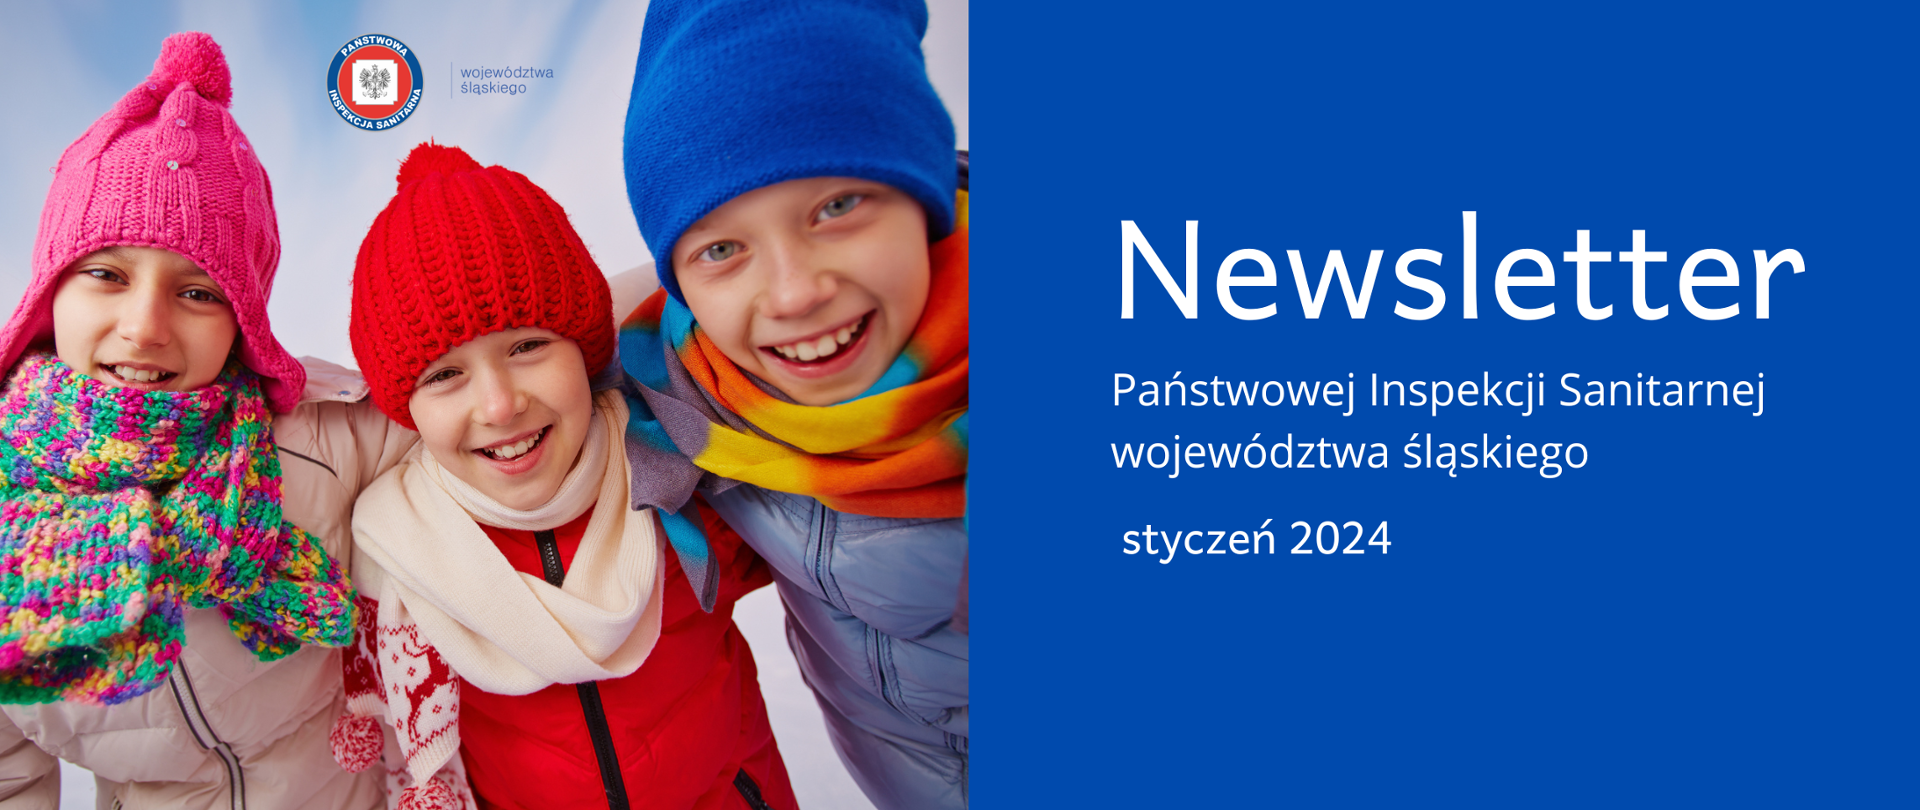 Uśmiechnięte dzieci w zimowych czapkach, po prawej stronie na niebieskim tle napis Newsletter Państwowej Inspekcji Sanitarnej województwa śląskiego za styczeń 2024 